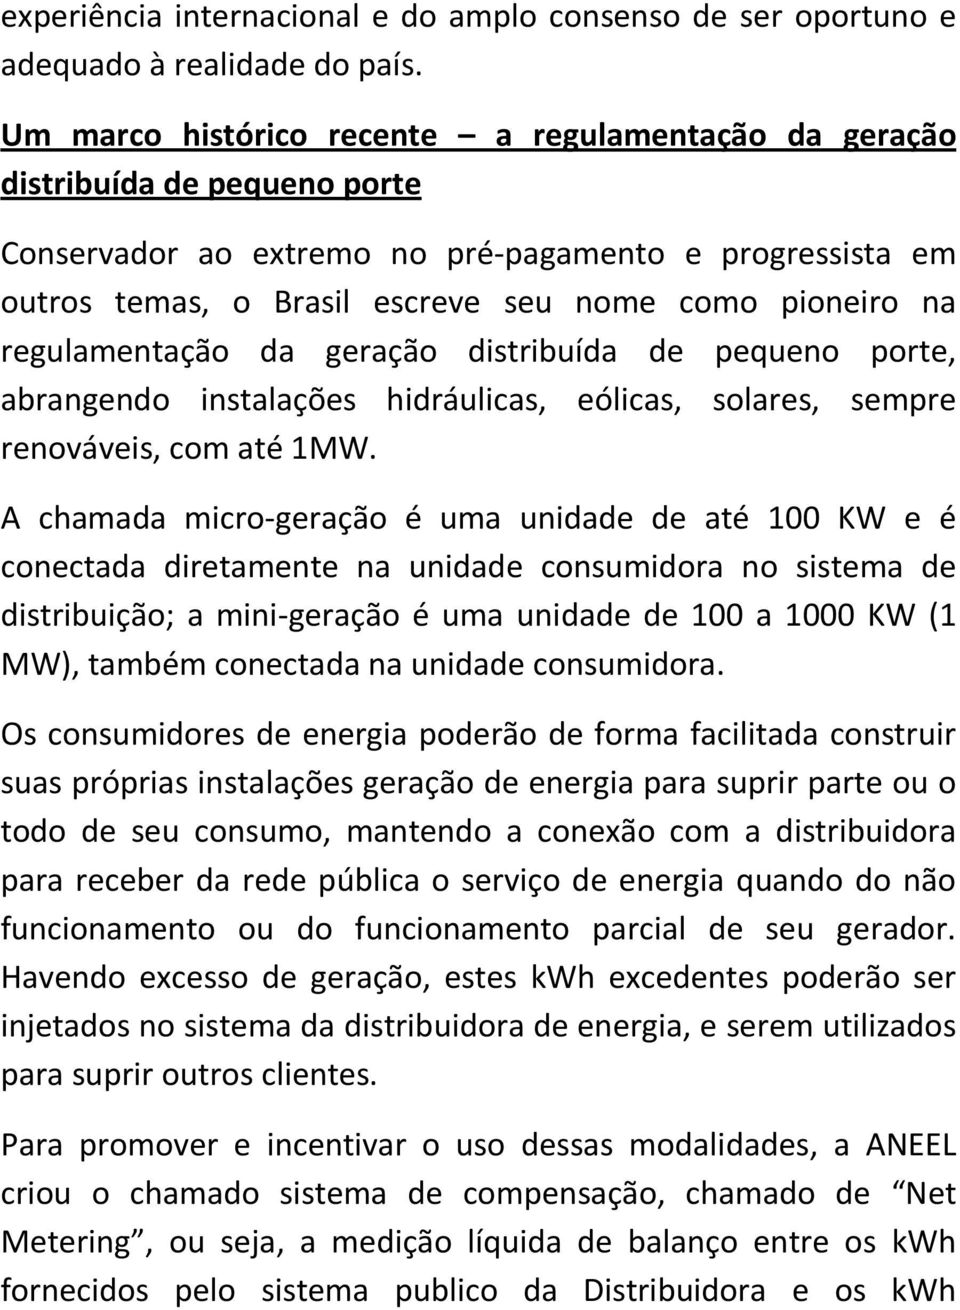 regulamentação da geração distribuída de pequeno porte, abrangendo instalações hidráulicas, eólicas, solares, sempre renováveis, com até 1MW.